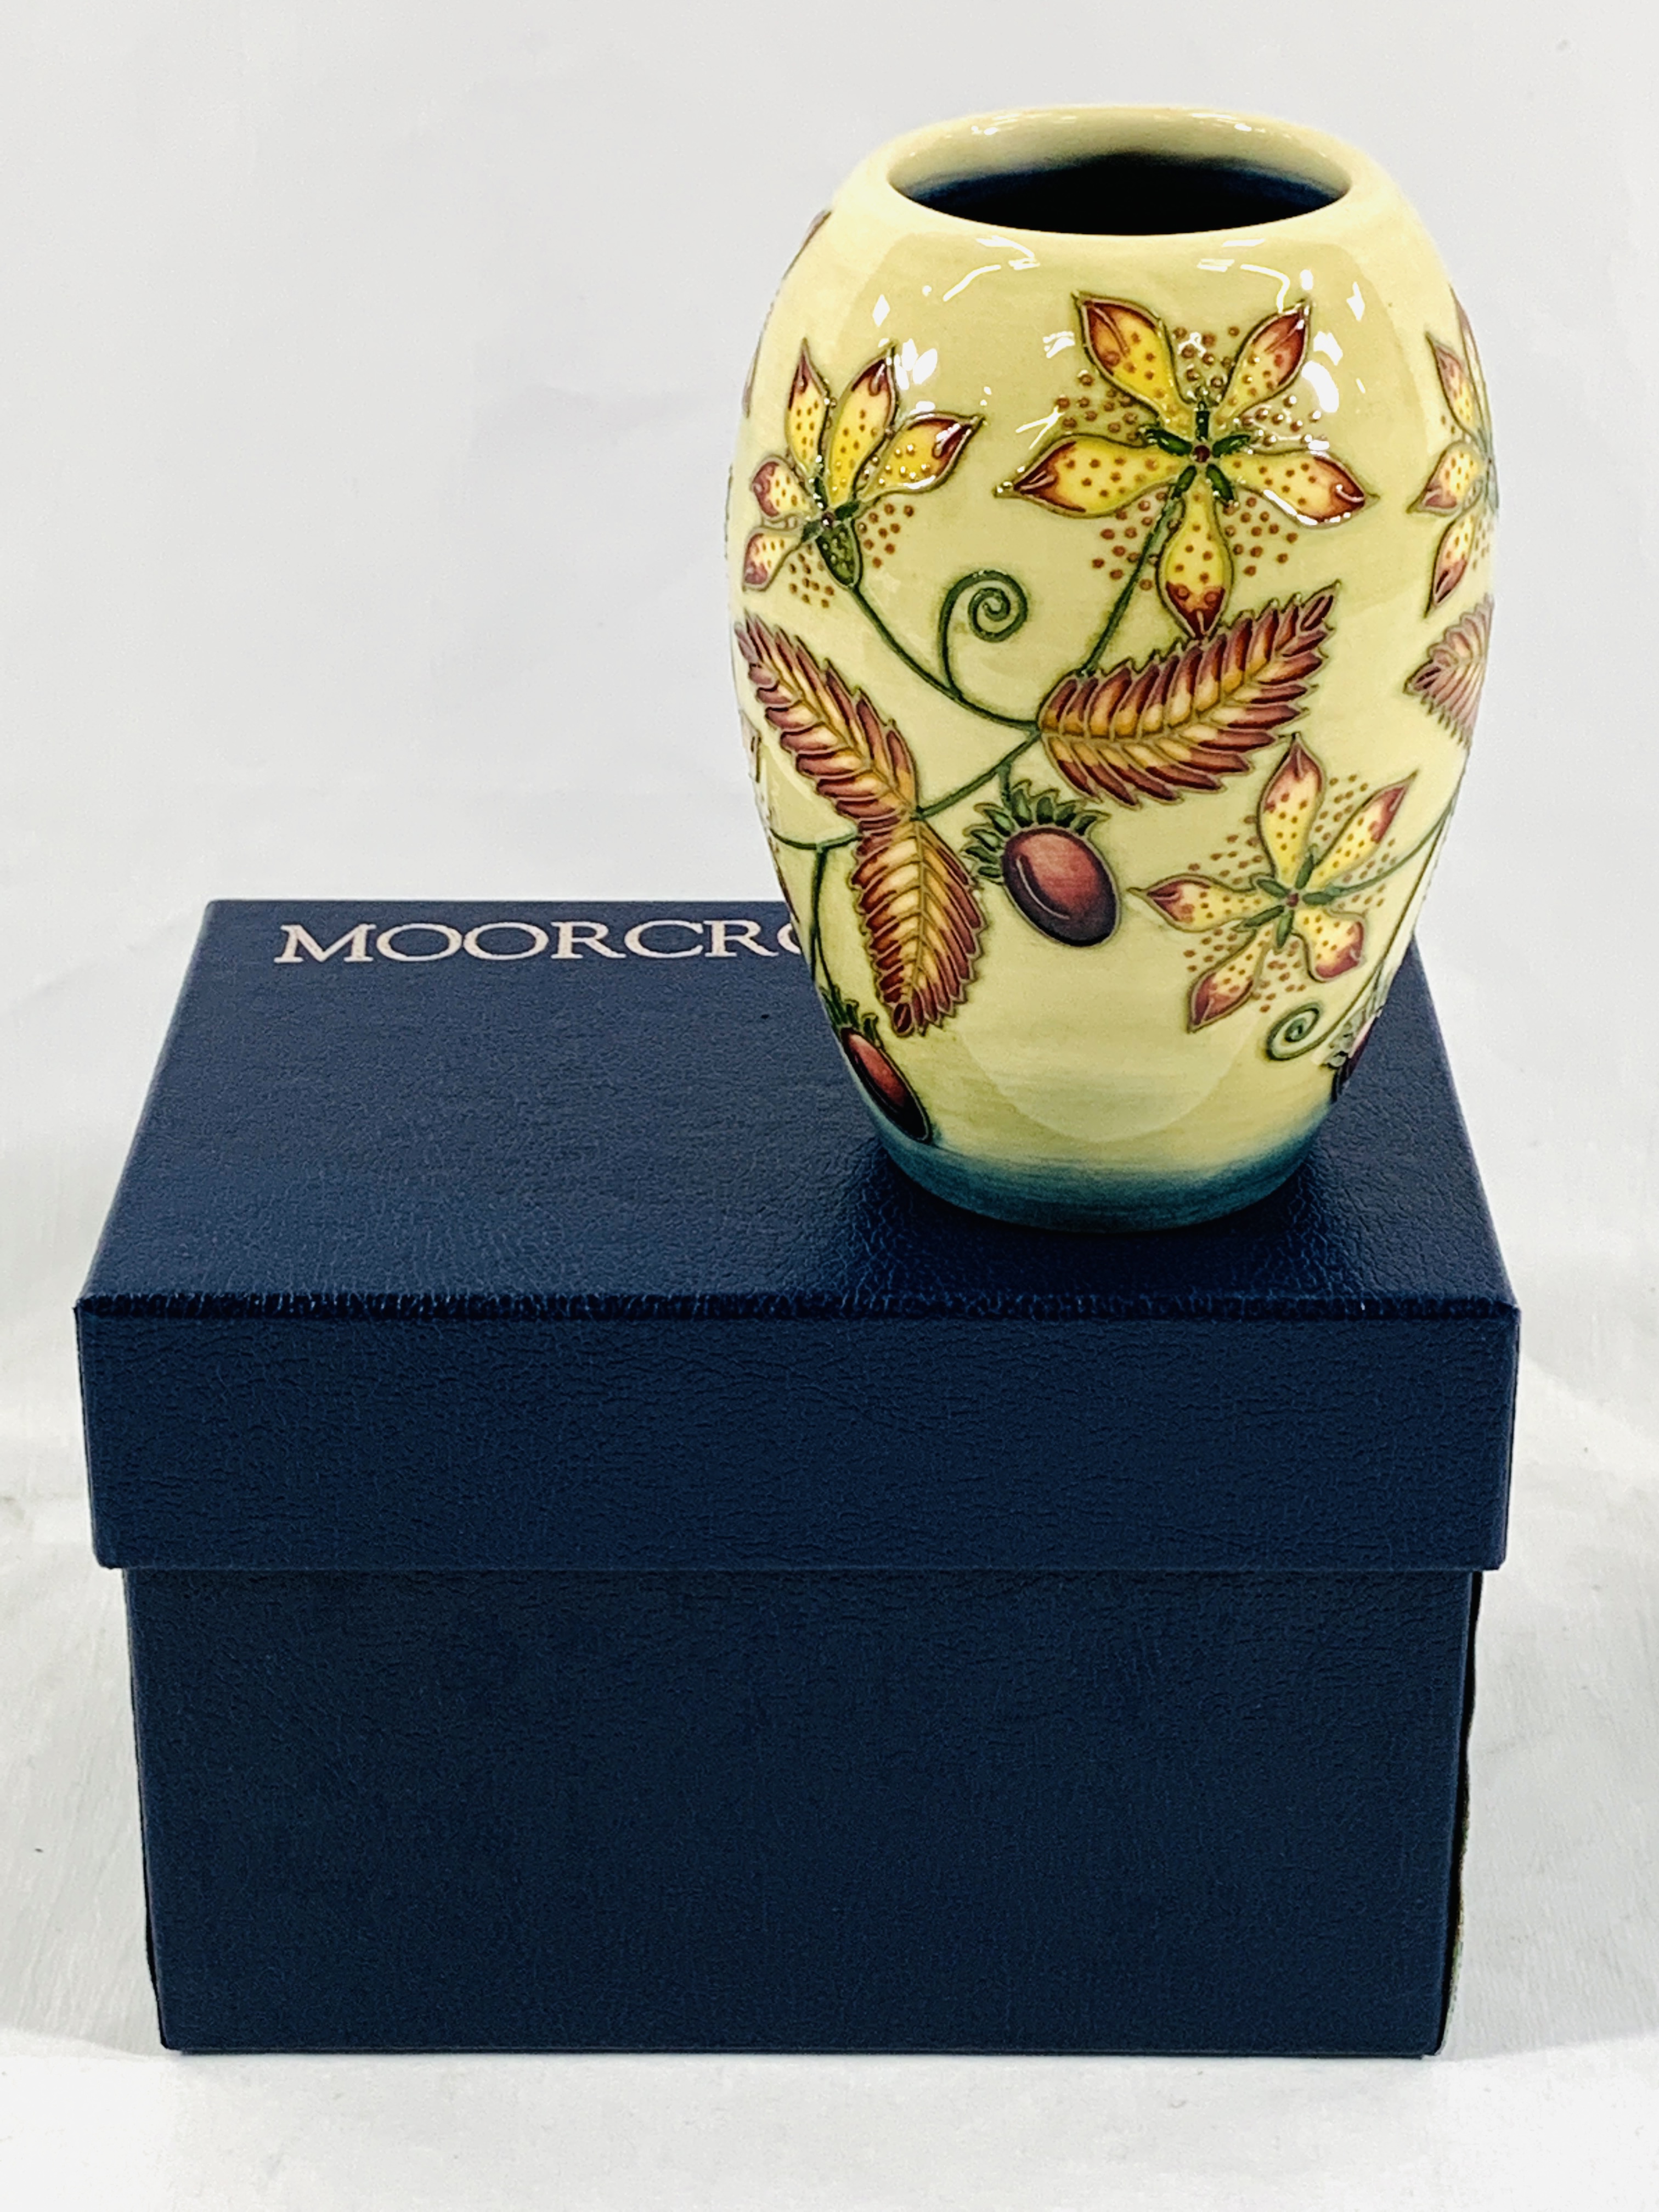 Boxed Moorcroft vase - Image 3 of 4